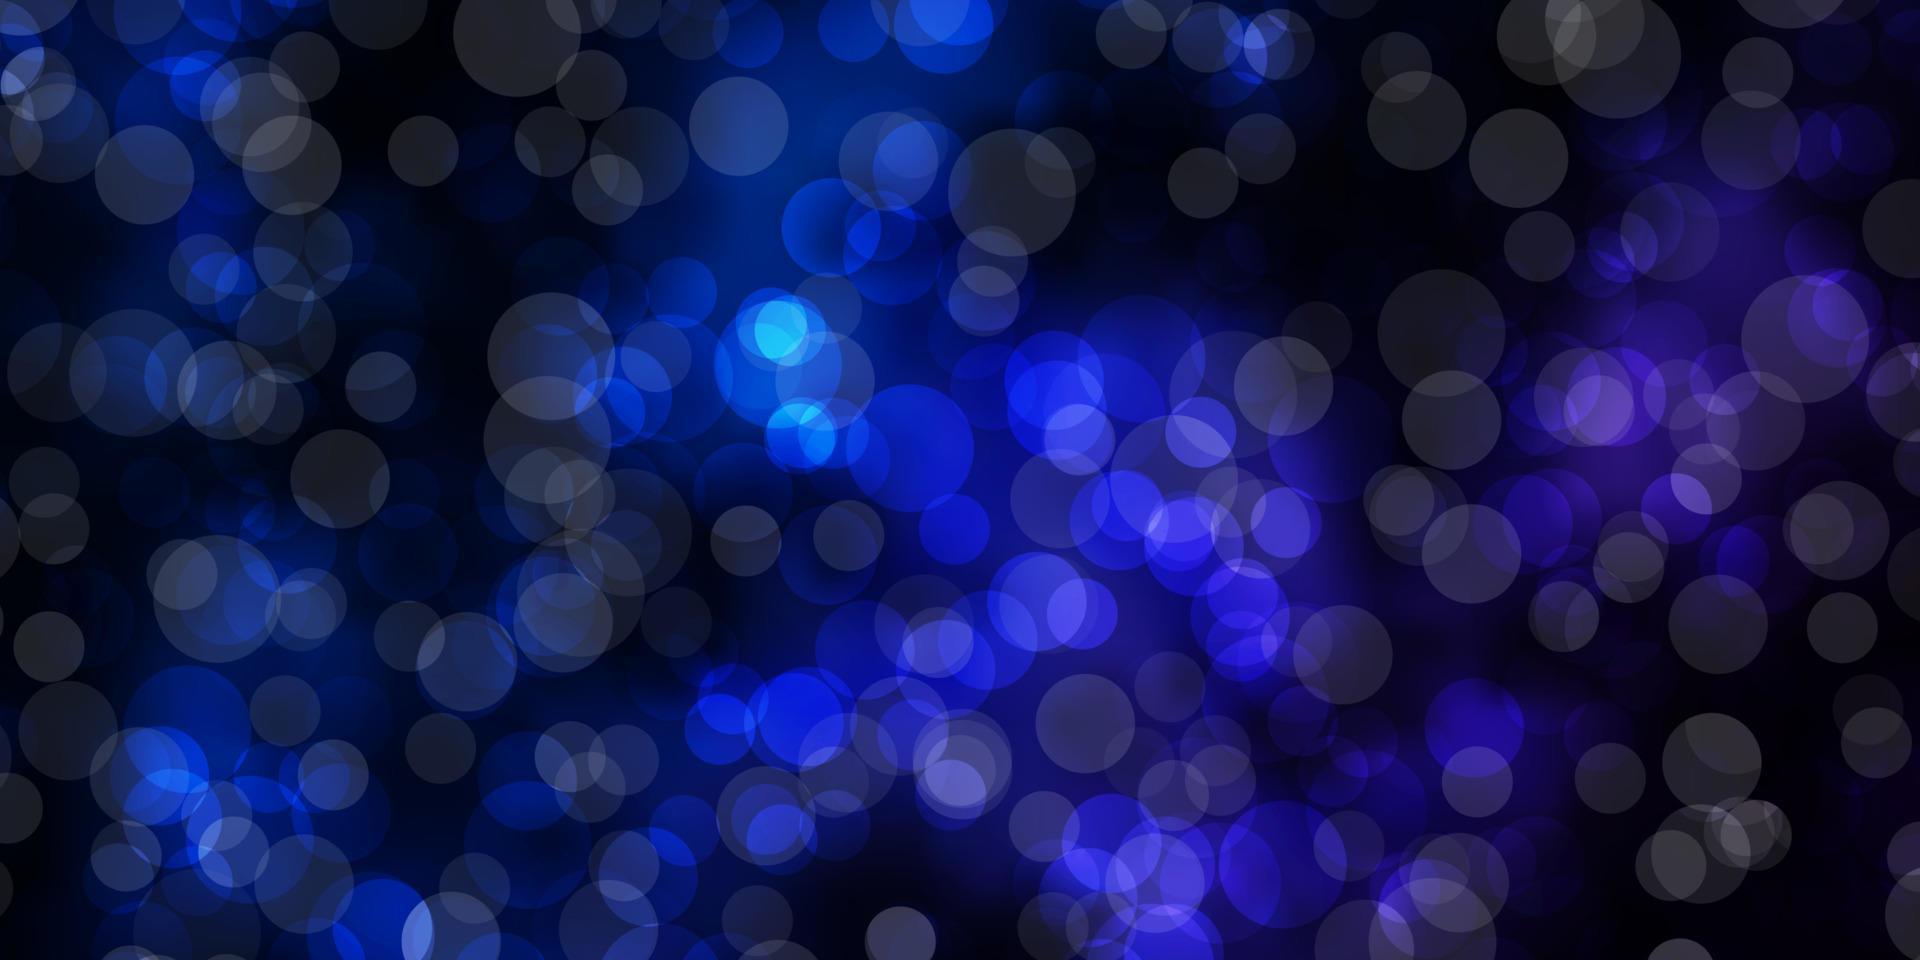 mörkrosa, blå vektorstruktur med skivor. vektor